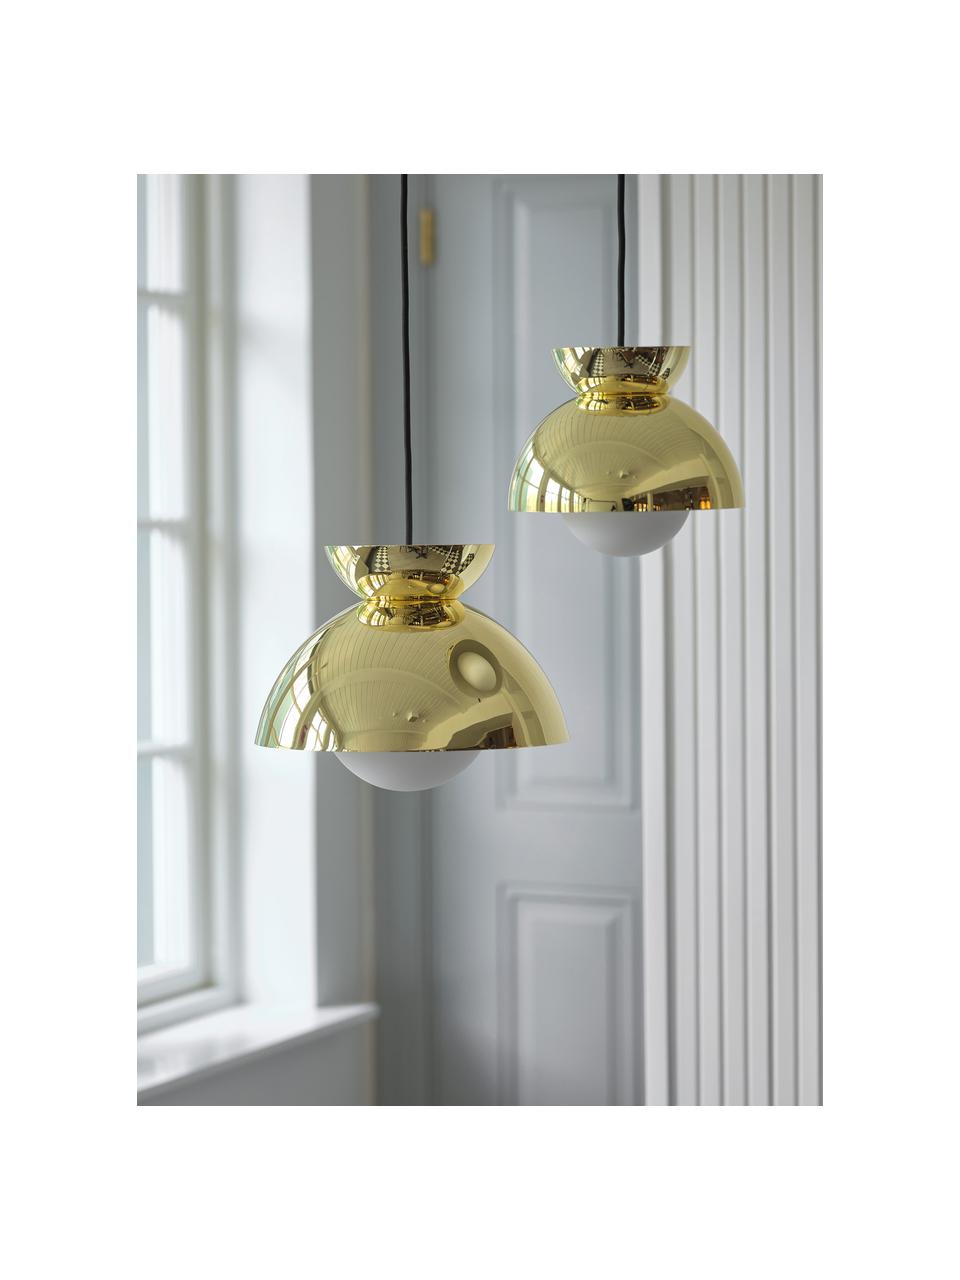 Kleine Design Pendelleuchte Butterfly, Lampenschirm: Metall, beschichtet, Goldfarben, glänzend, Ø 21 x H 19 cm